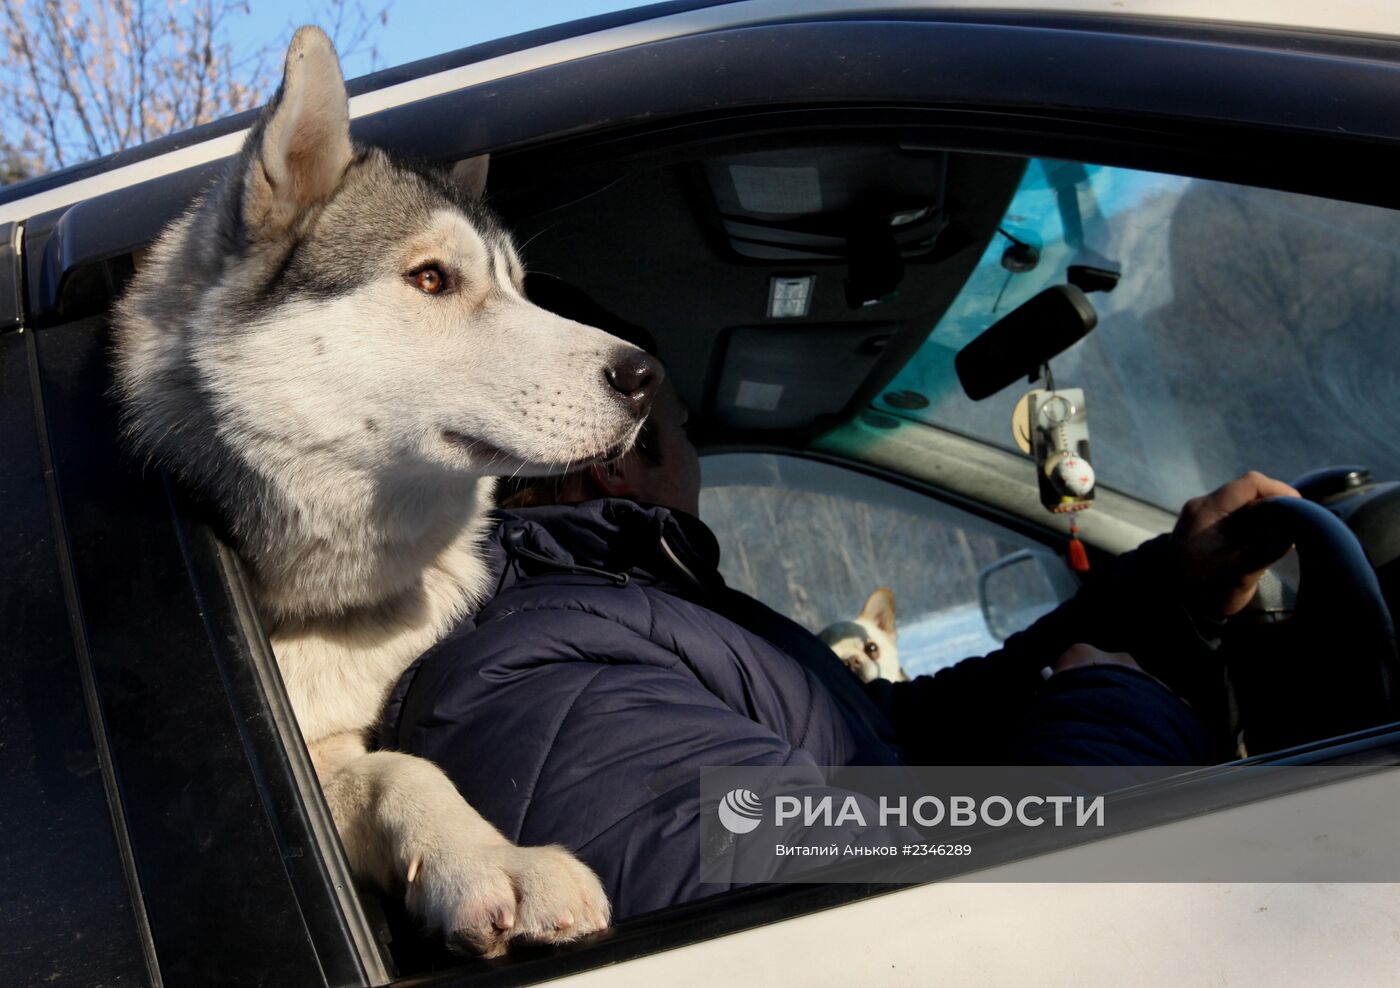 Состязания собачьих упряжек прошли в Приморском крае